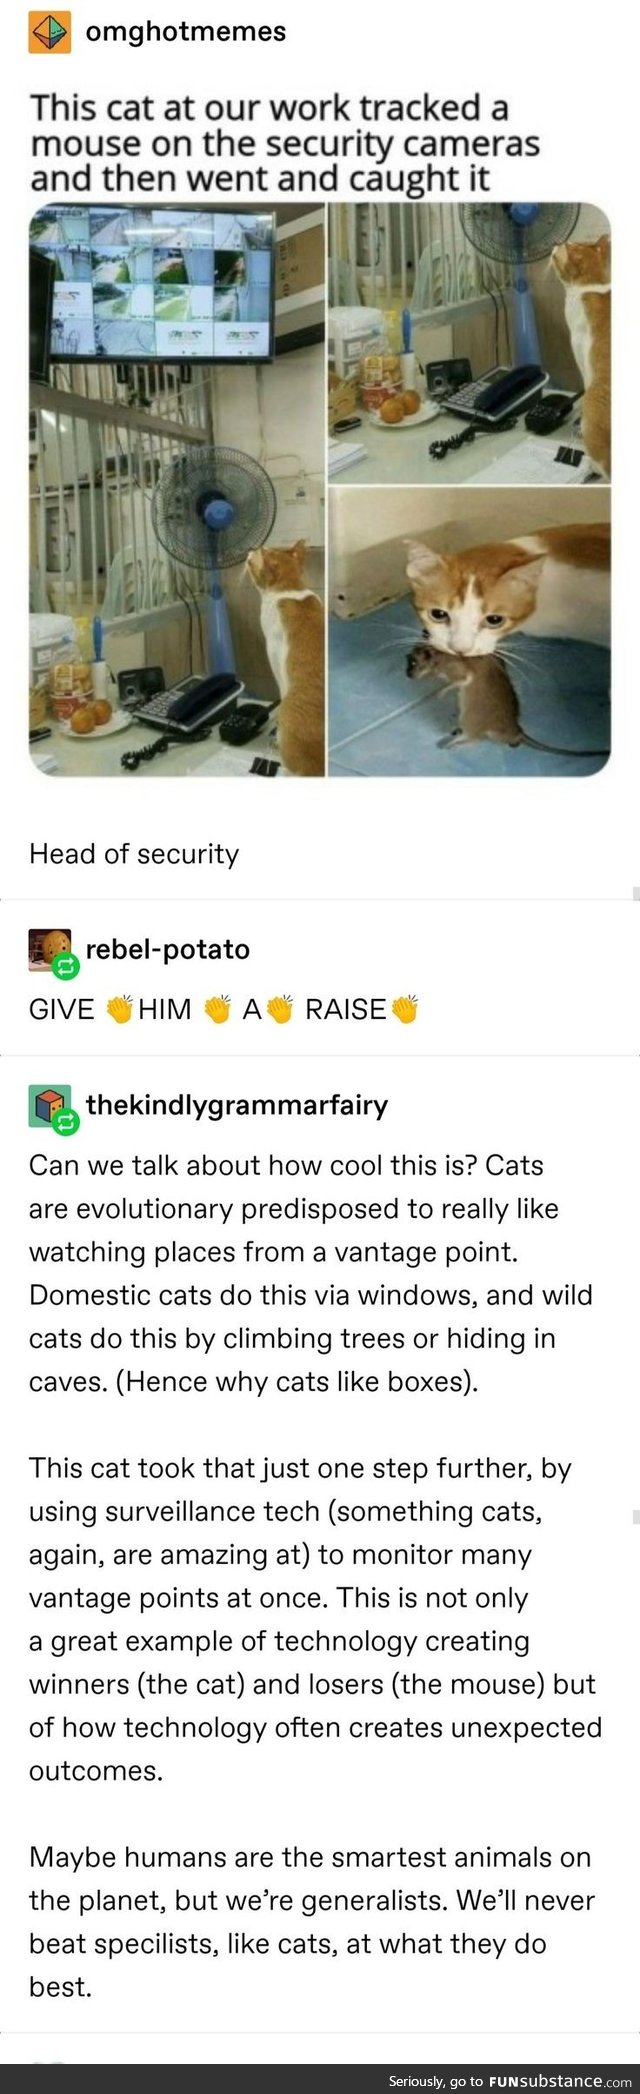 Cats Surveillance Specialists